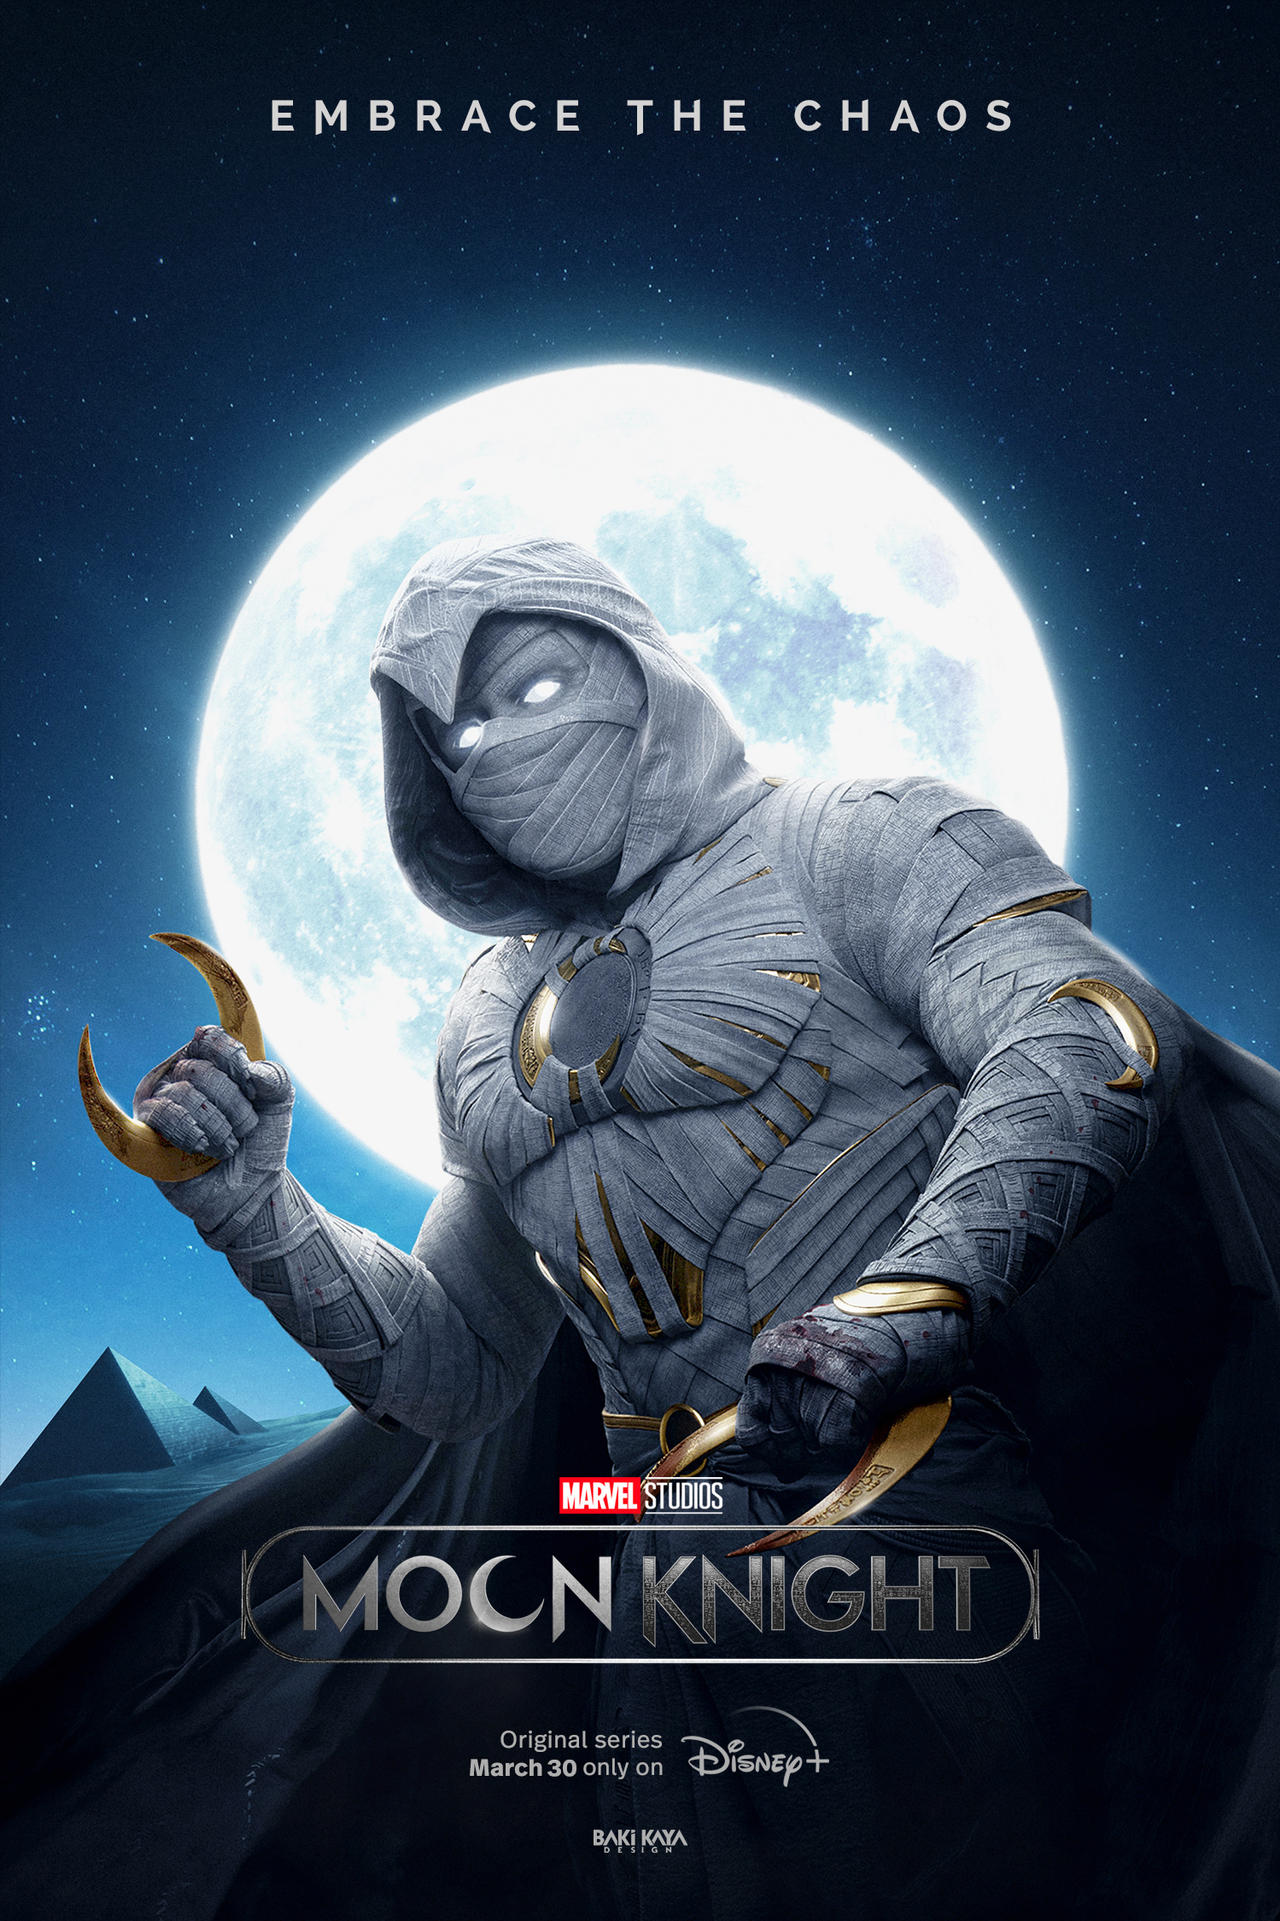 Moon Knight: The Movie - Fan Art on Behance